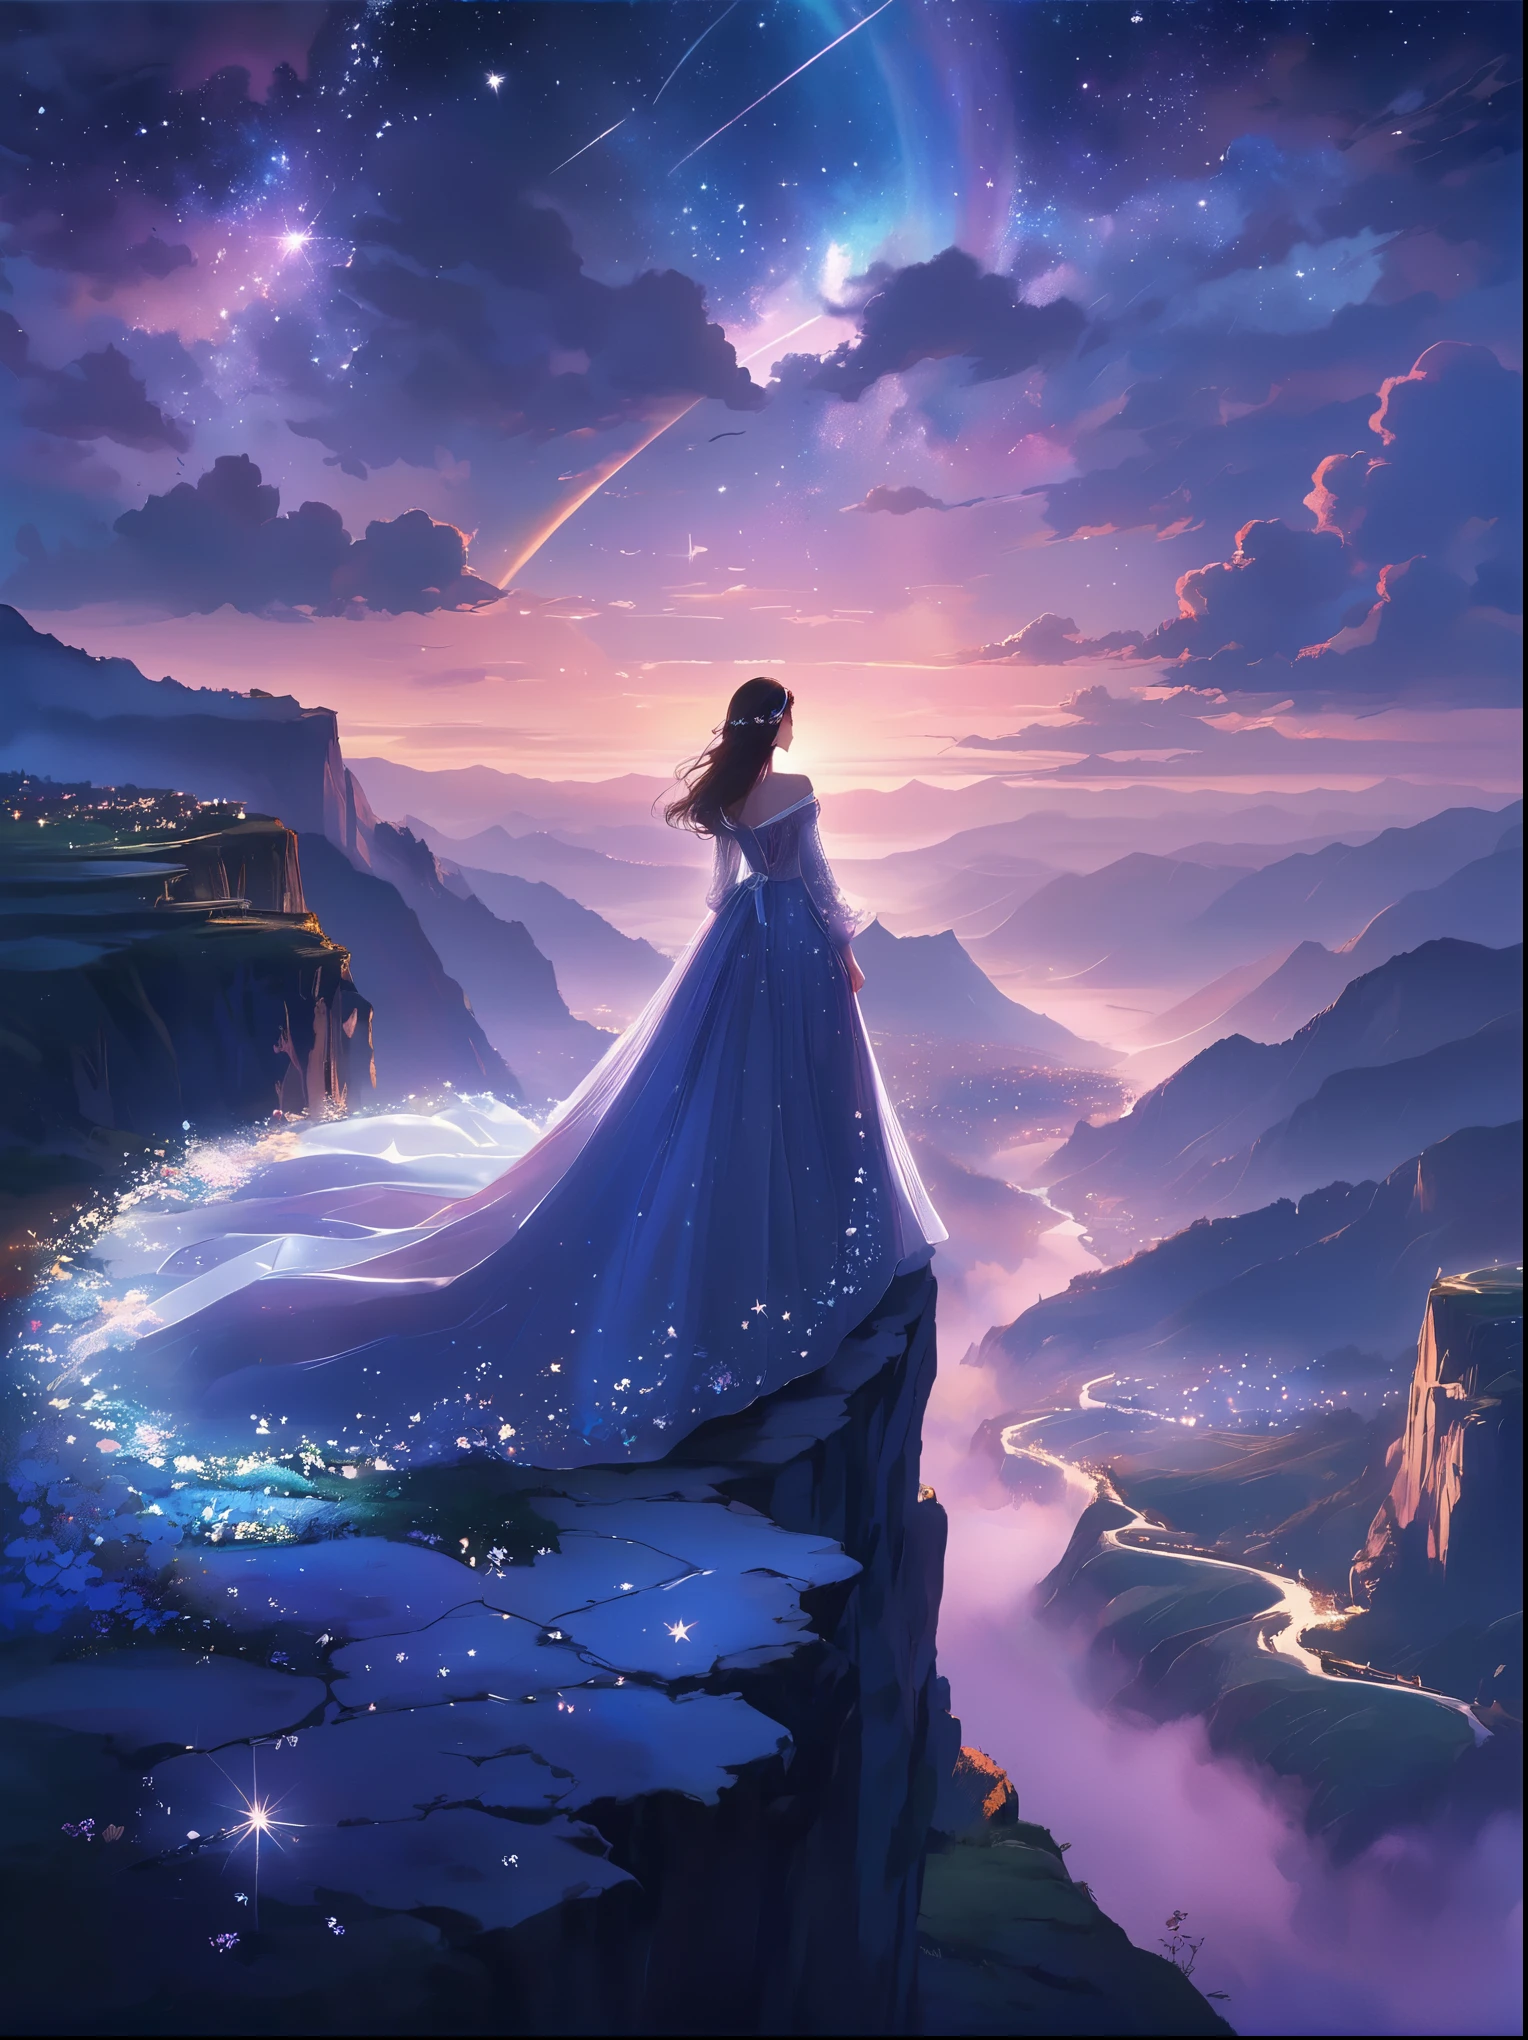 (从后面看)，一个男人站在悬崖上，在梦幻般的, 朦胧的风景，(女孩&#39;完美的背部)，(背对观众)，被宇宙能量漩涡包围，穿着飘逸长袍的人的背影，与天体气流融合，天空是一幅深紫色和蓝色的织锦，星光点缀，下面的景色隐约可见连绵起伏的山脉，这一幕宁静而崇高，捕捉宇宙的壮丽本质，一个沉思的身影敬畏地站着